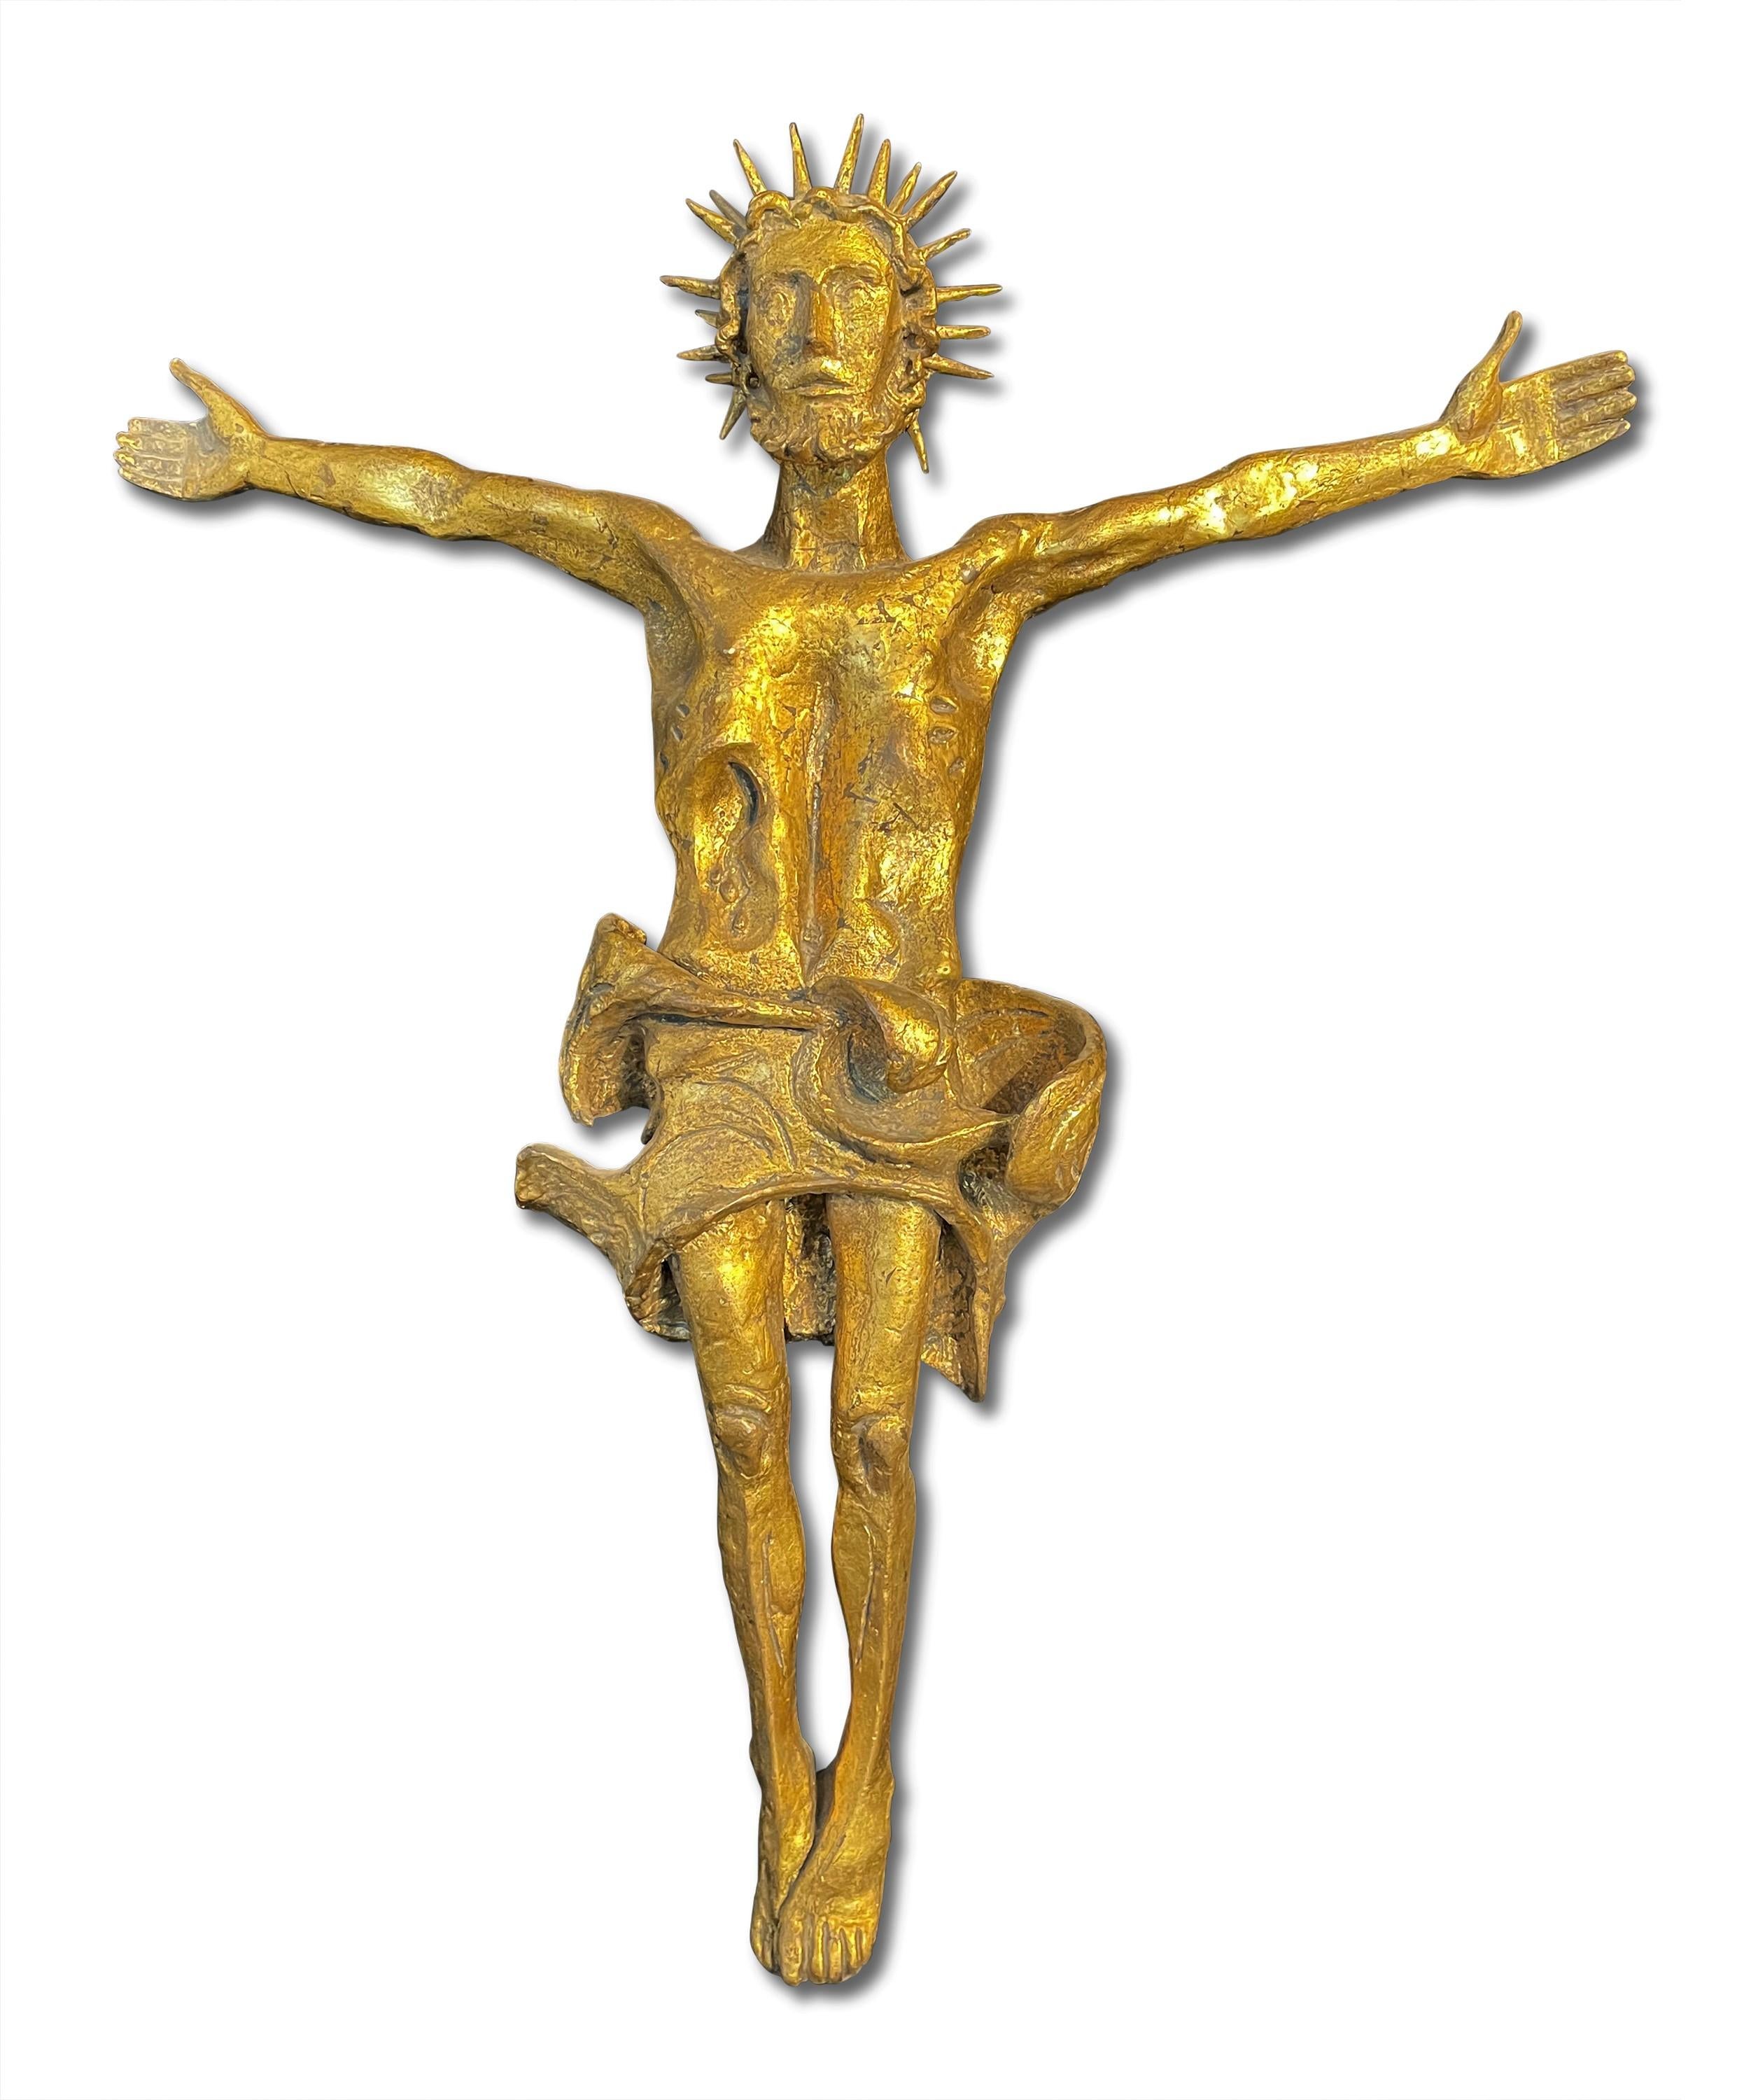 Milton Hebald Figurative Sculpture - GOLDEN JESUS